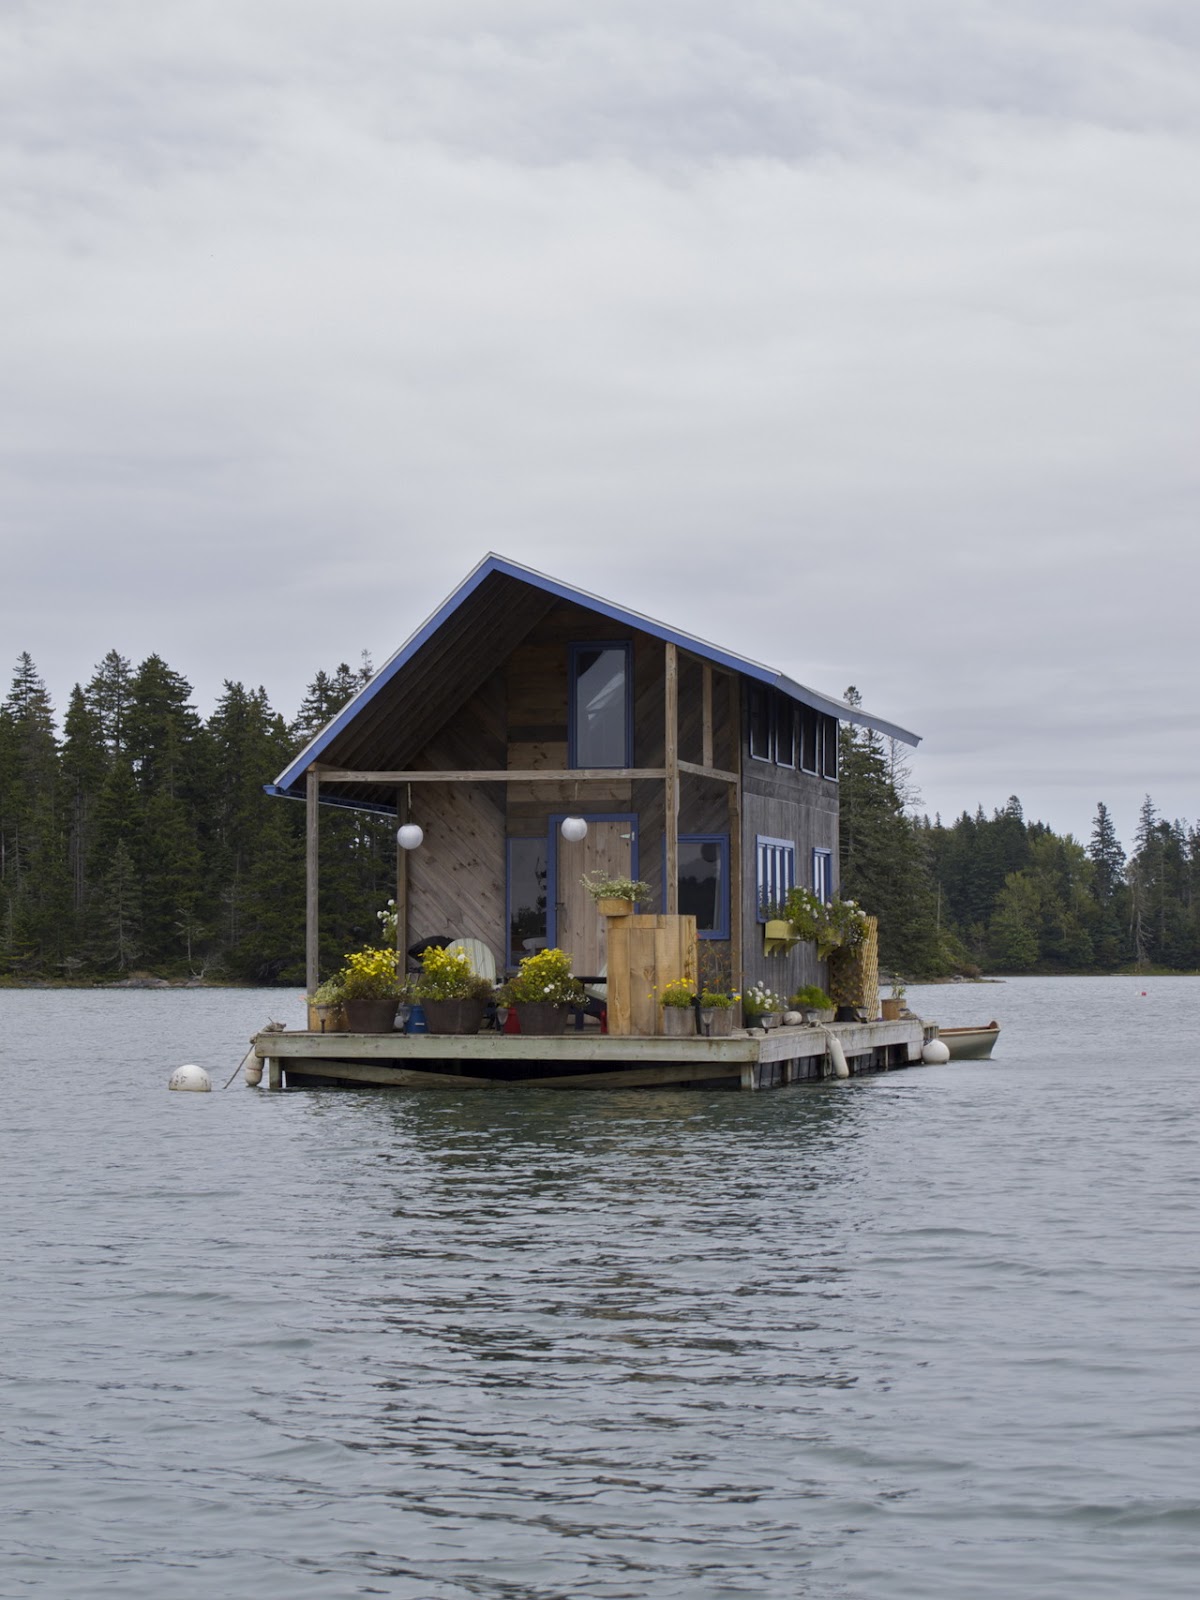 Honey I Shrunk The House: Floating house